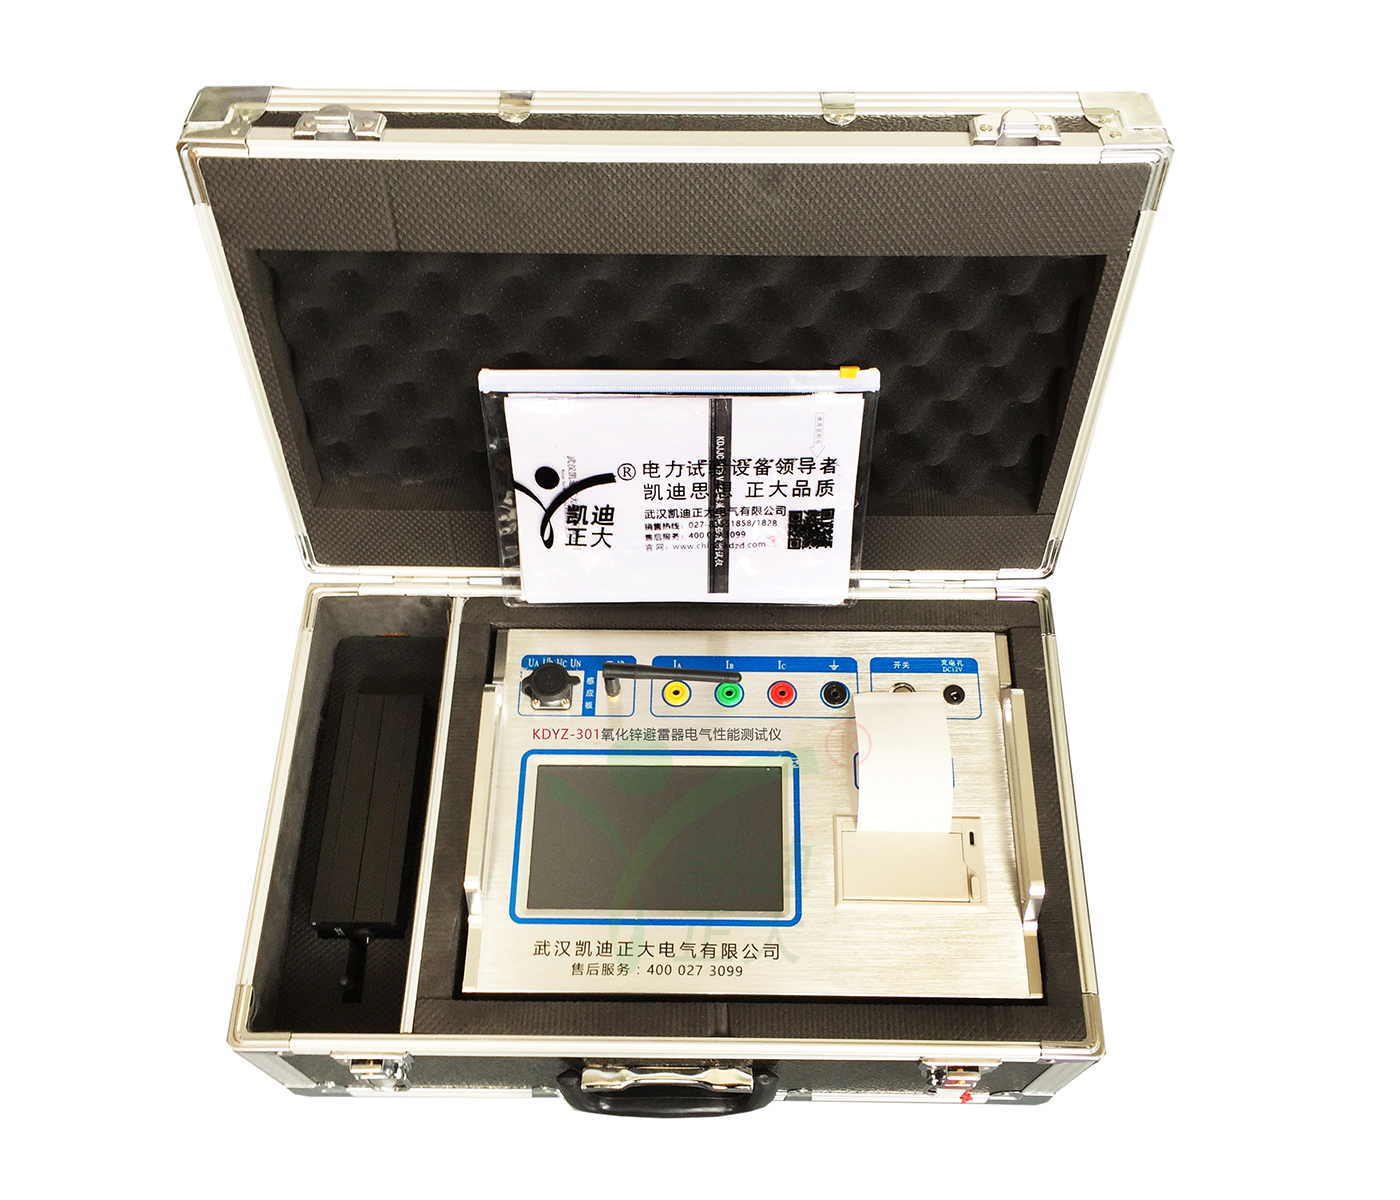 凭祥KDYZ-301氧化锌避雷器带电电气特性测试仪